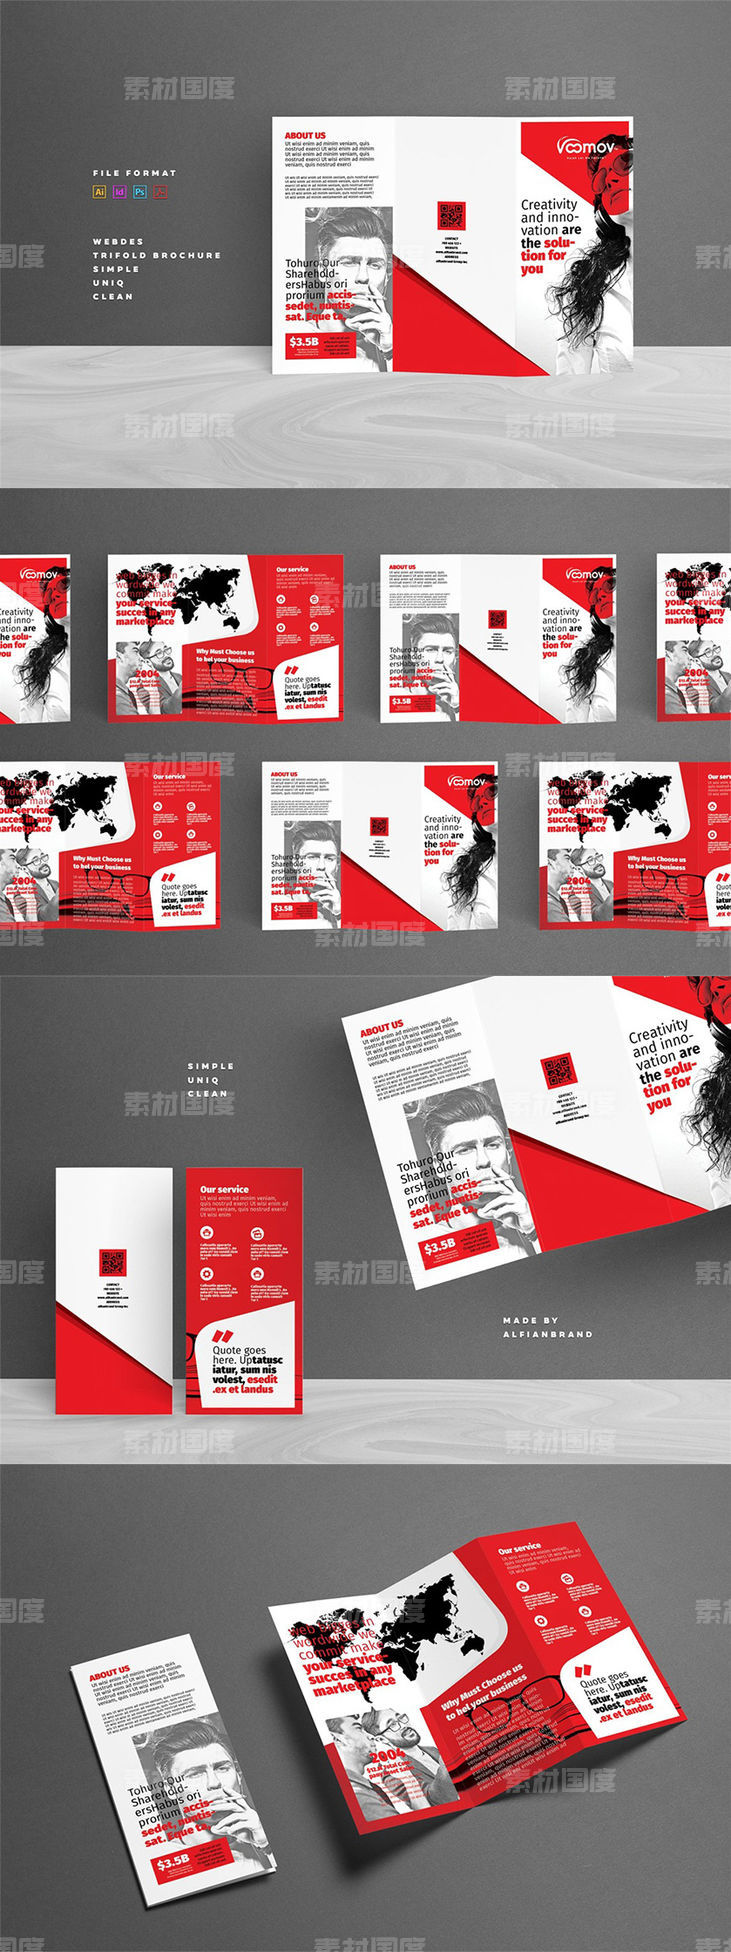 商业时尚三折页画册模板 Business Tri-fold Brochure